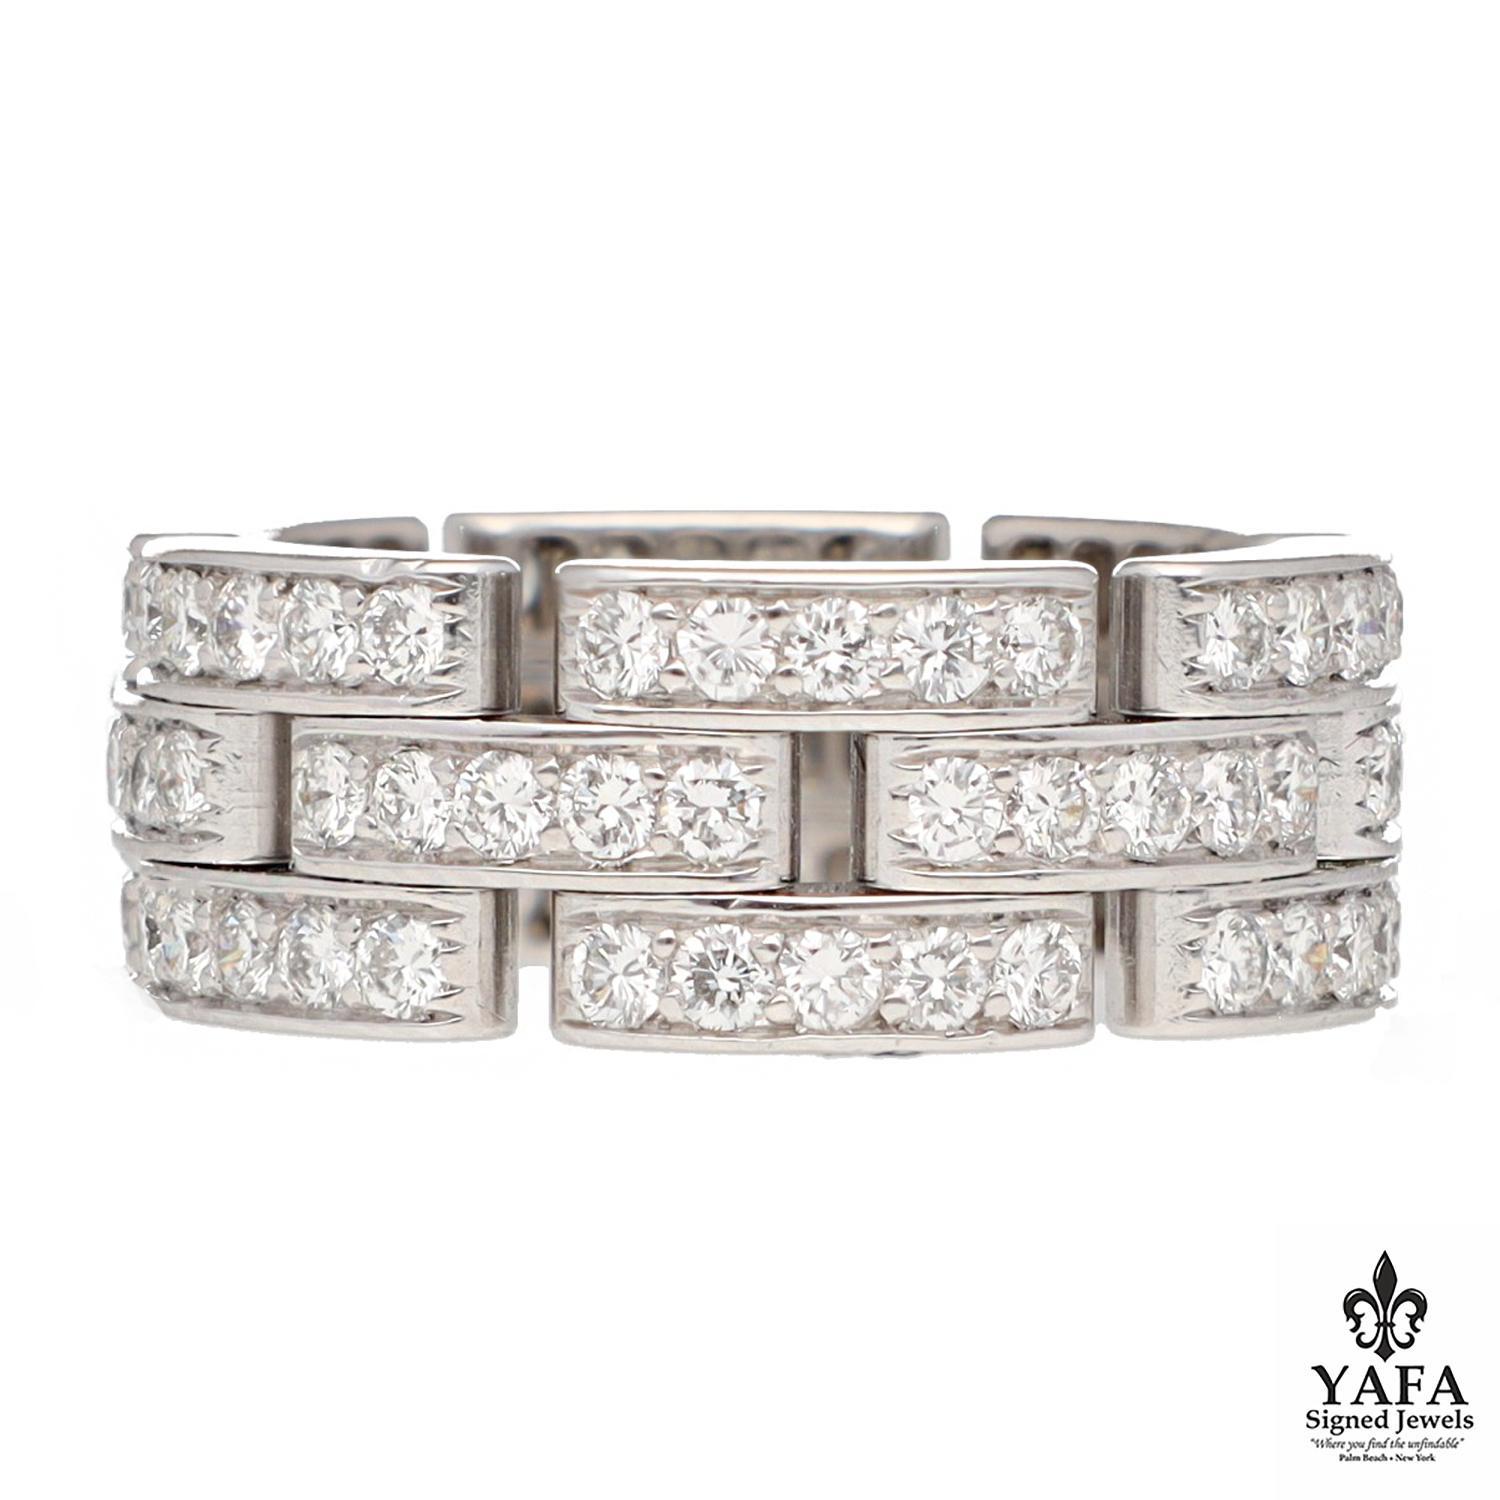 Cartier 18K Weißgold und Diamant 3-Reihe Panther Link Ring ist bekannt für seine Luxus und Eleganz. Dieses ikonische Cartier-Motiv ist mit funkelnden Diamanten verziert, die seine atemberaubende Handwerkskunst widerspiegeln. Größe 52, 6 oder 16,6